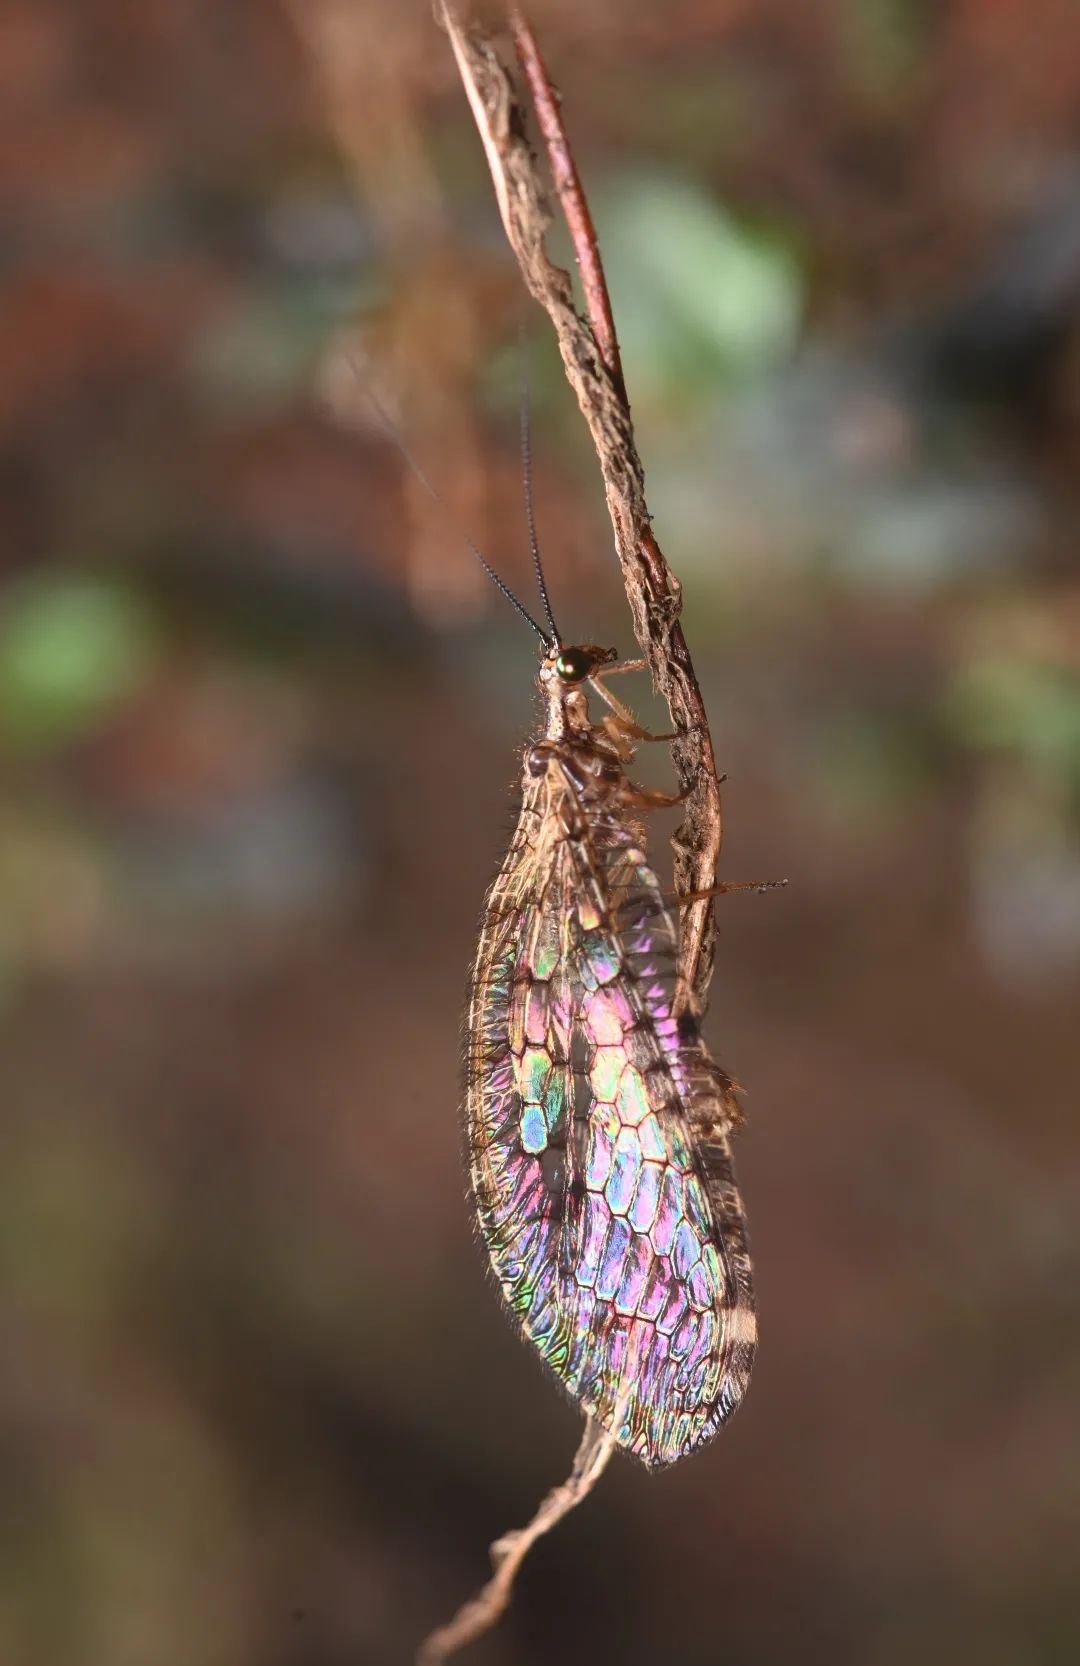 在一棵树裸露的根须中，李元胜发现了一只溪蛉。和脉翅目的草蛉和褐蛉不同的是，溪蛉的翅上不仅生有细毛，翅脉还把翅膀分成了无数薄窗。适当的光线条件下，这些薄窗会呈现彩虹般的光彩。图为溪蛉。